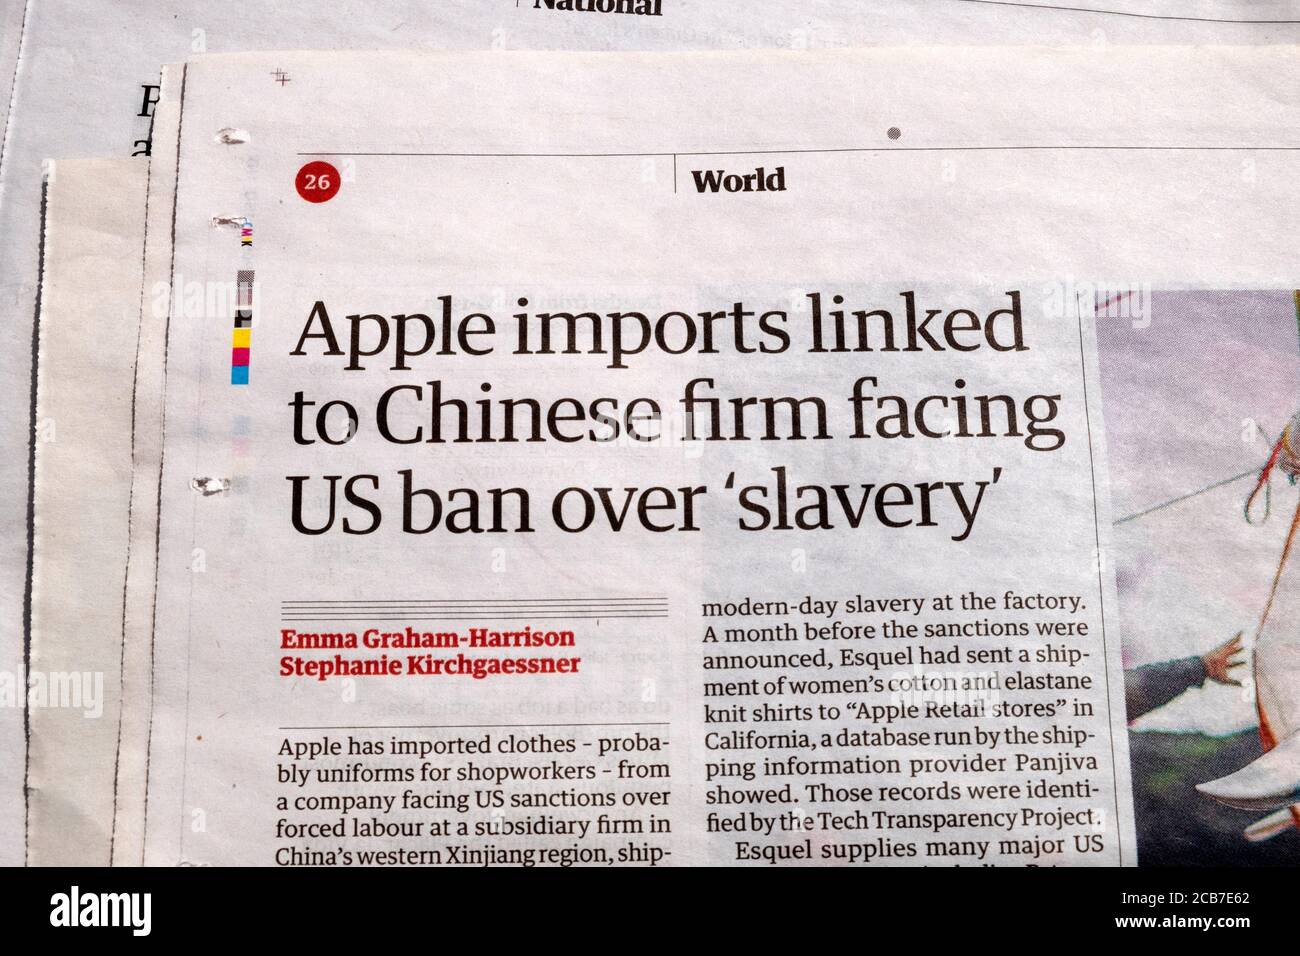 "Le importazioni di Apple sono collegate a un'azienda cinese che deve far fronte al divieto degli Stati Uniti 'slatvery' ' titolo del giornale dell'articolo del mondo all'interno della pagina Guardian 10 Agosto 2020 Londra UK Foto Stock